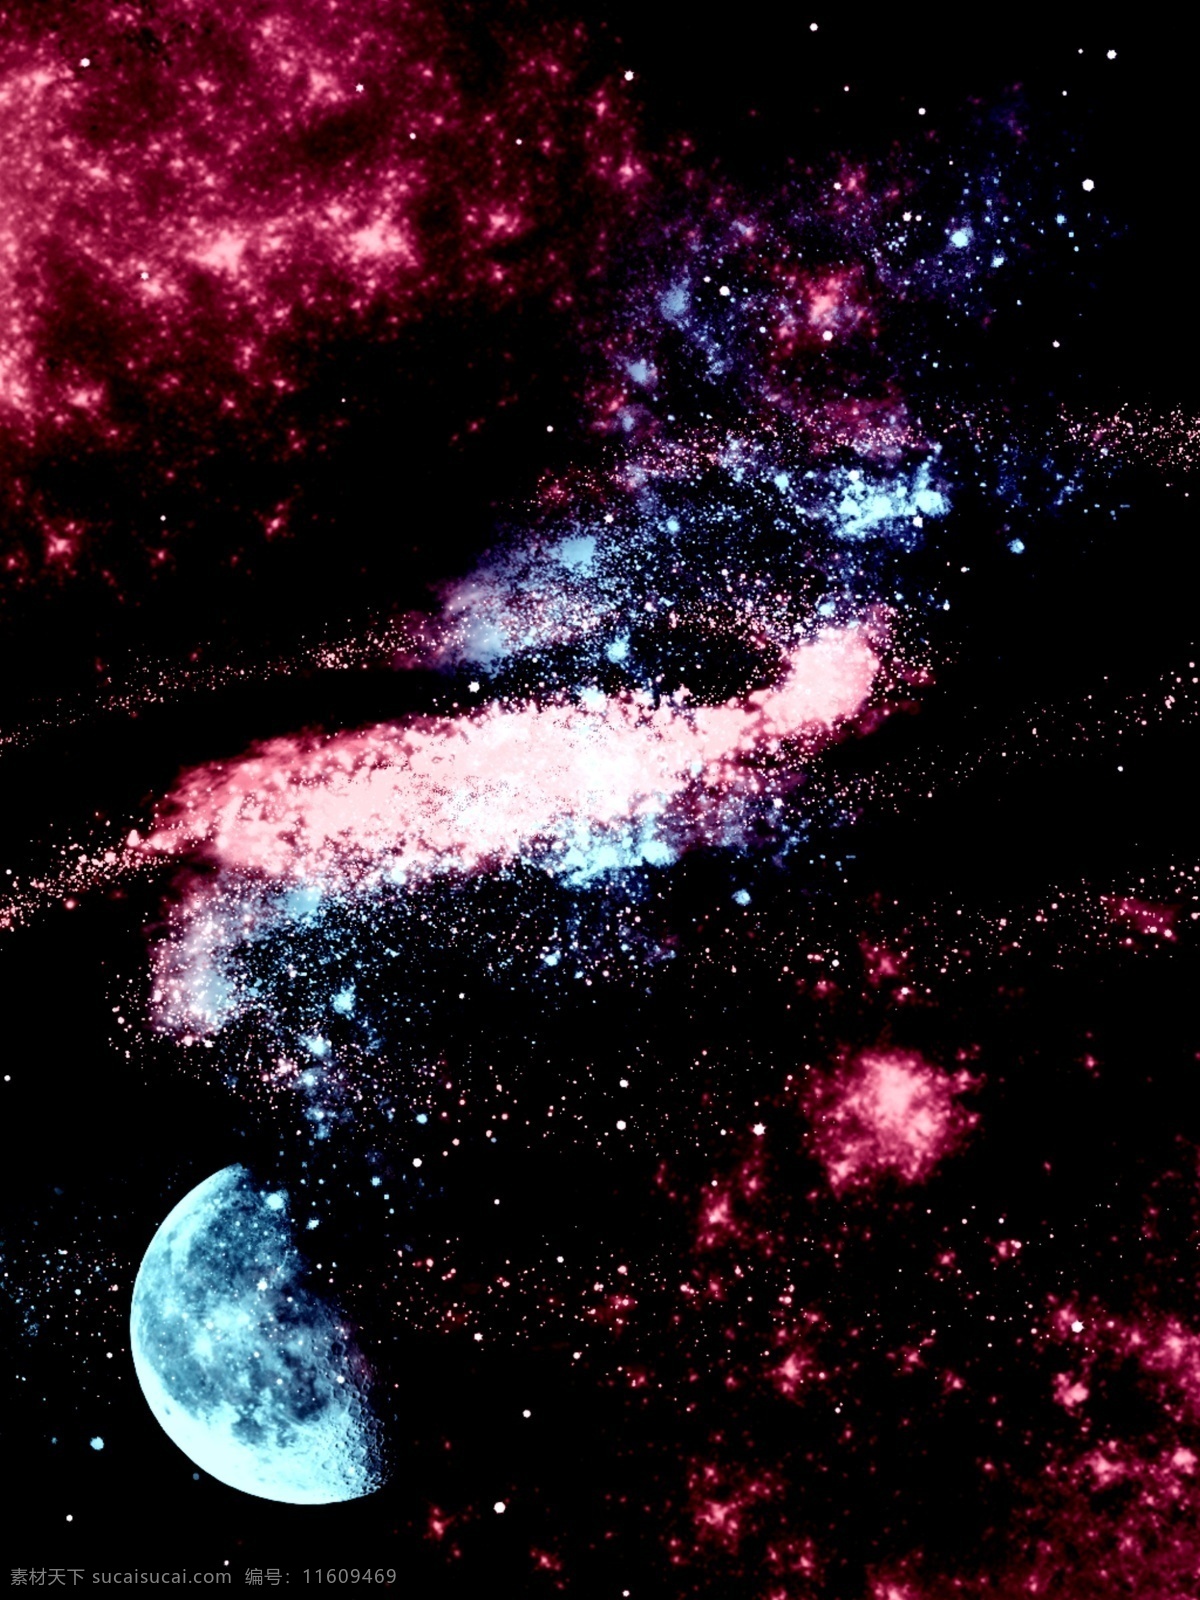 原创 星空 星云 酷 炫 背景 星空背景 星星 抽象 宇宙 宇宙背景 h5背景 神秘 银河